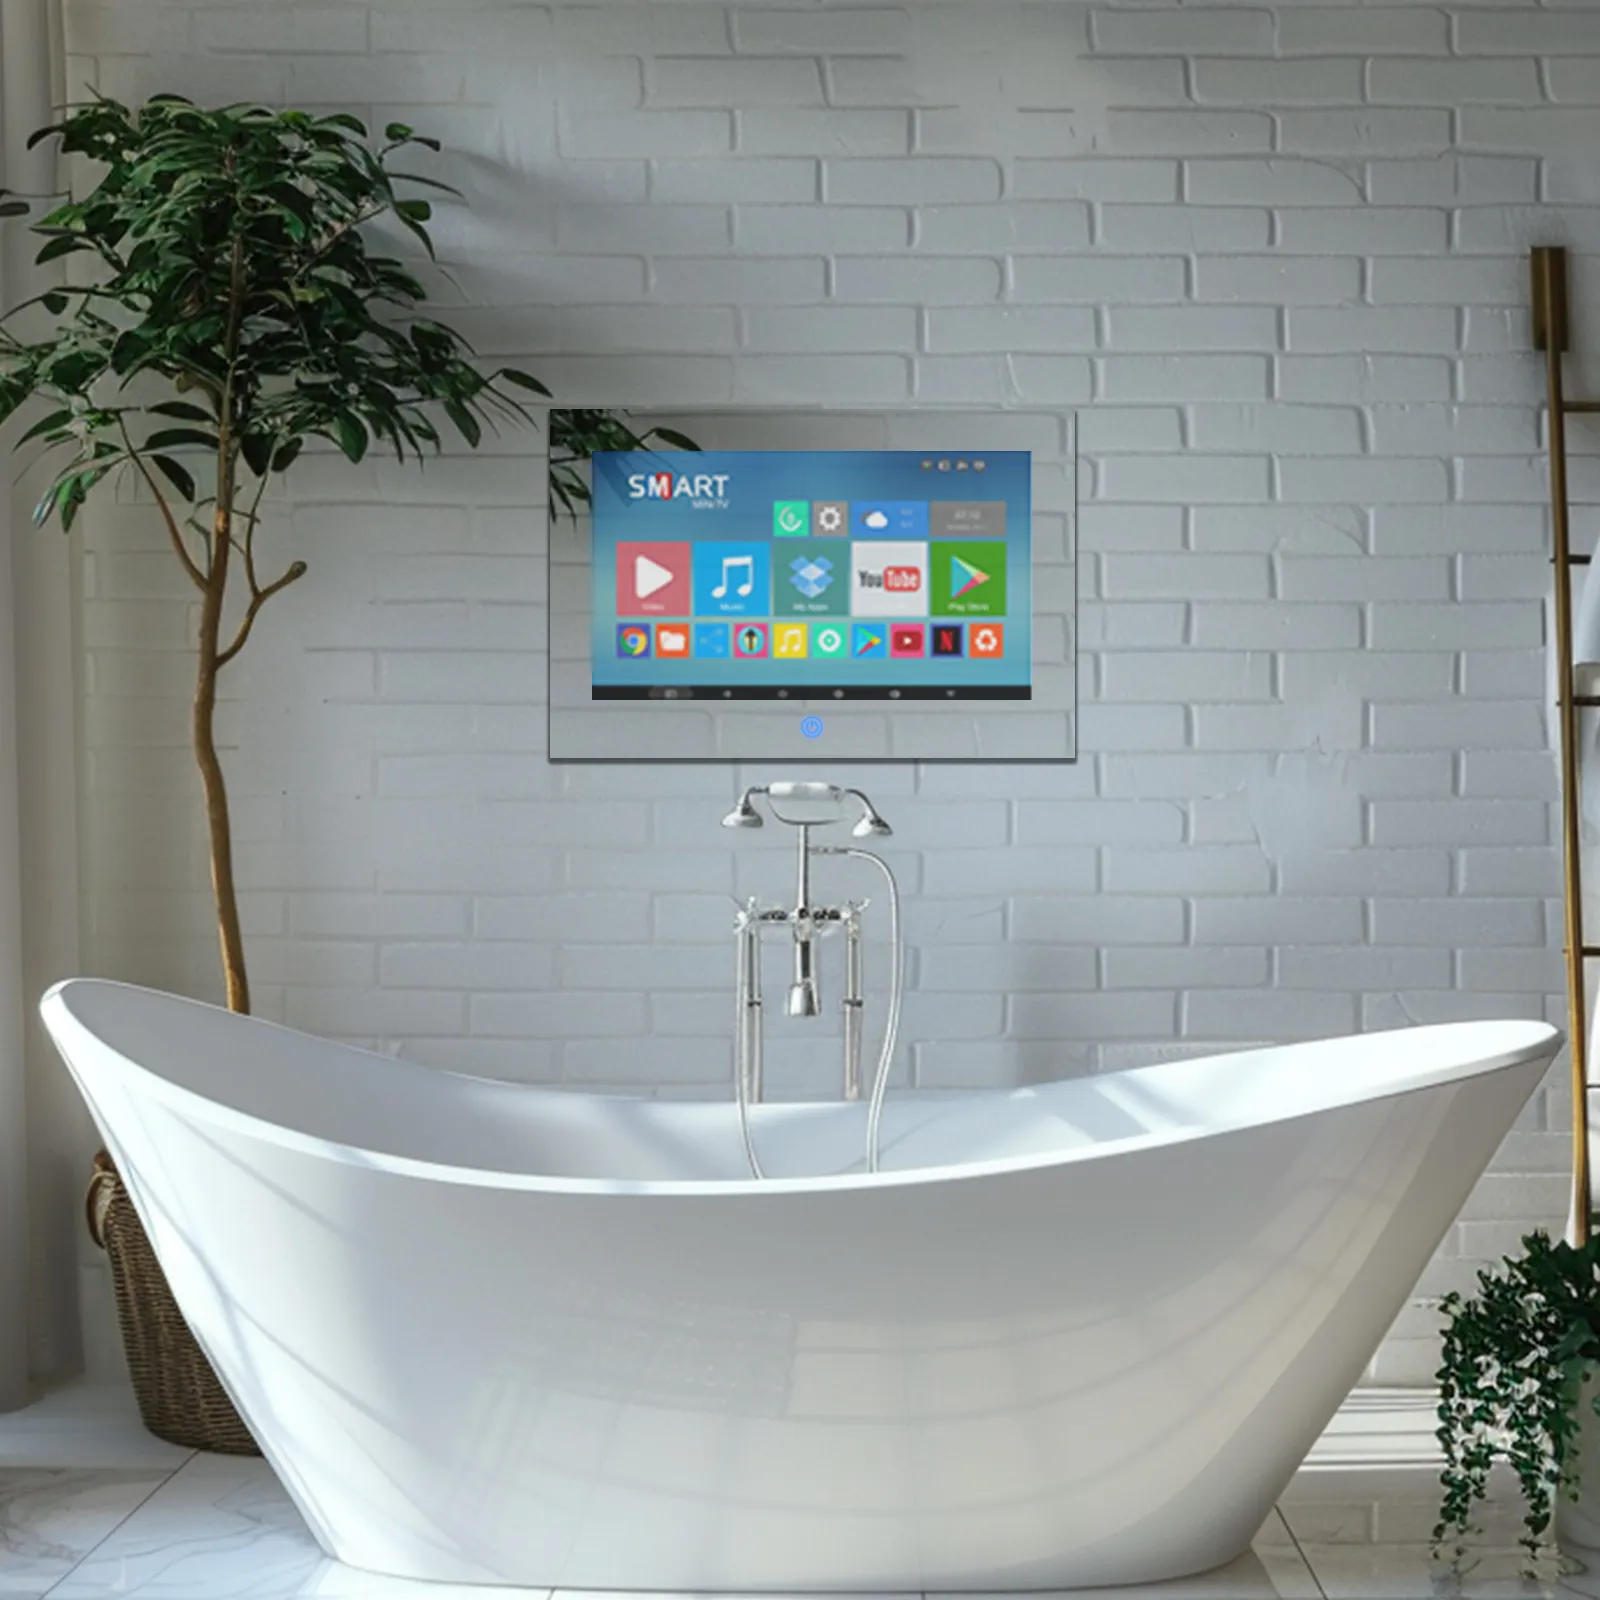 Smart bathroom mirror tv  22-inch Mirror tv touchscreen Waterproof HDTV for Indoor and Outdoor Use  HD Smart